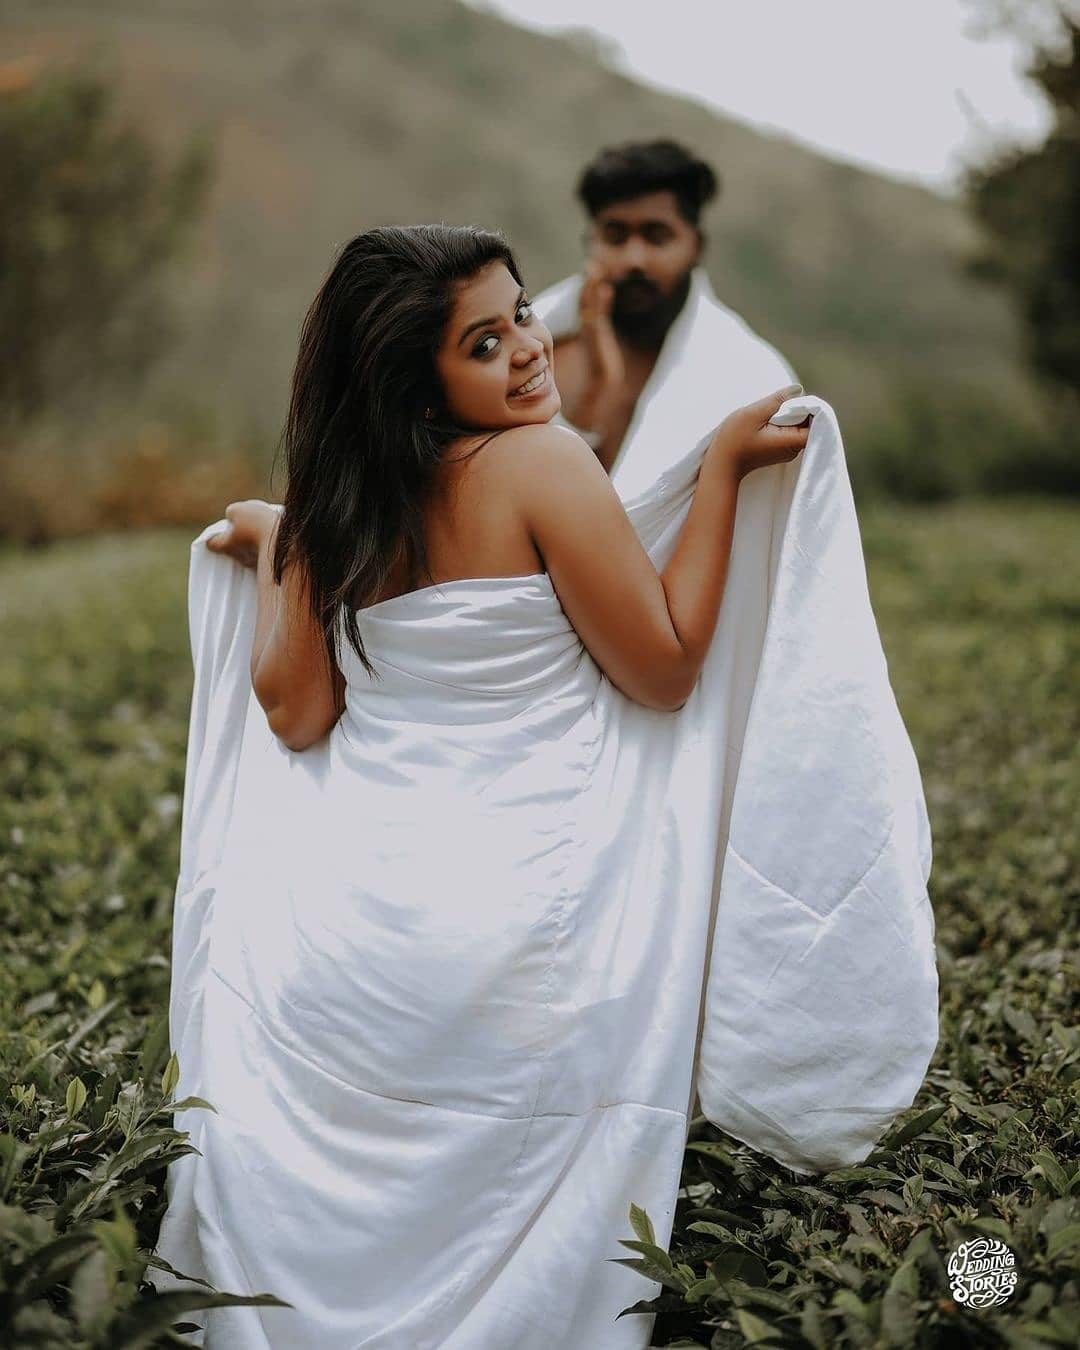 Kerala Wedding Photoshoot പുതപ്പിനുള്ളിൽ ദമ്പതികൾ ട്രോളുകളിൽ നിറഞ്ഞ ആ ചിത്രങ്ങൾ ഇതാ News